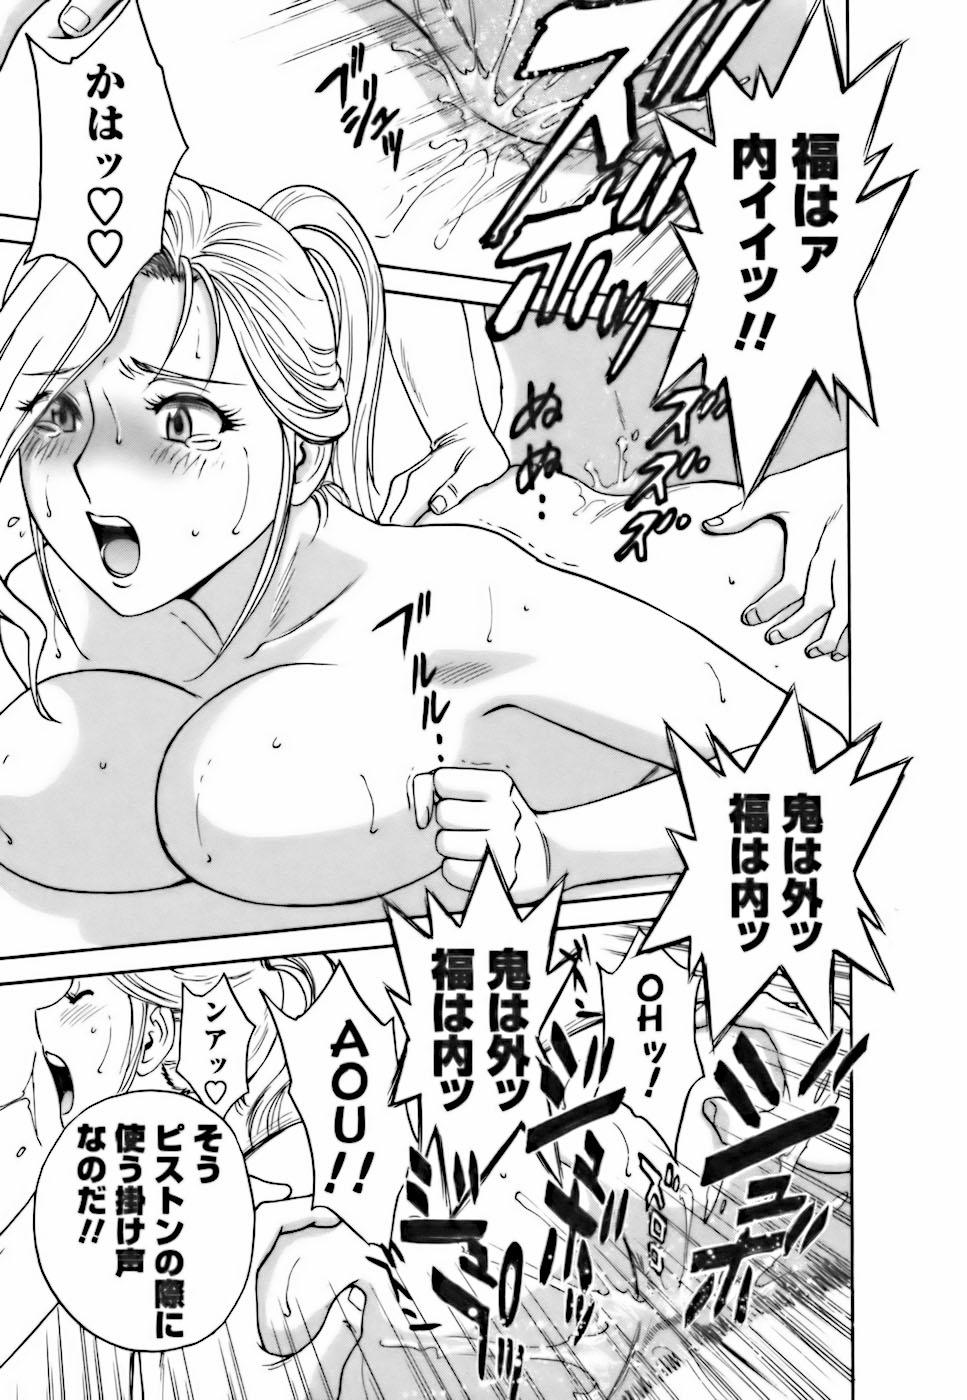 [Hidemaru] Mo-Retsu! Boin Sensei (Boing Boing Teacher) Vol.3 186